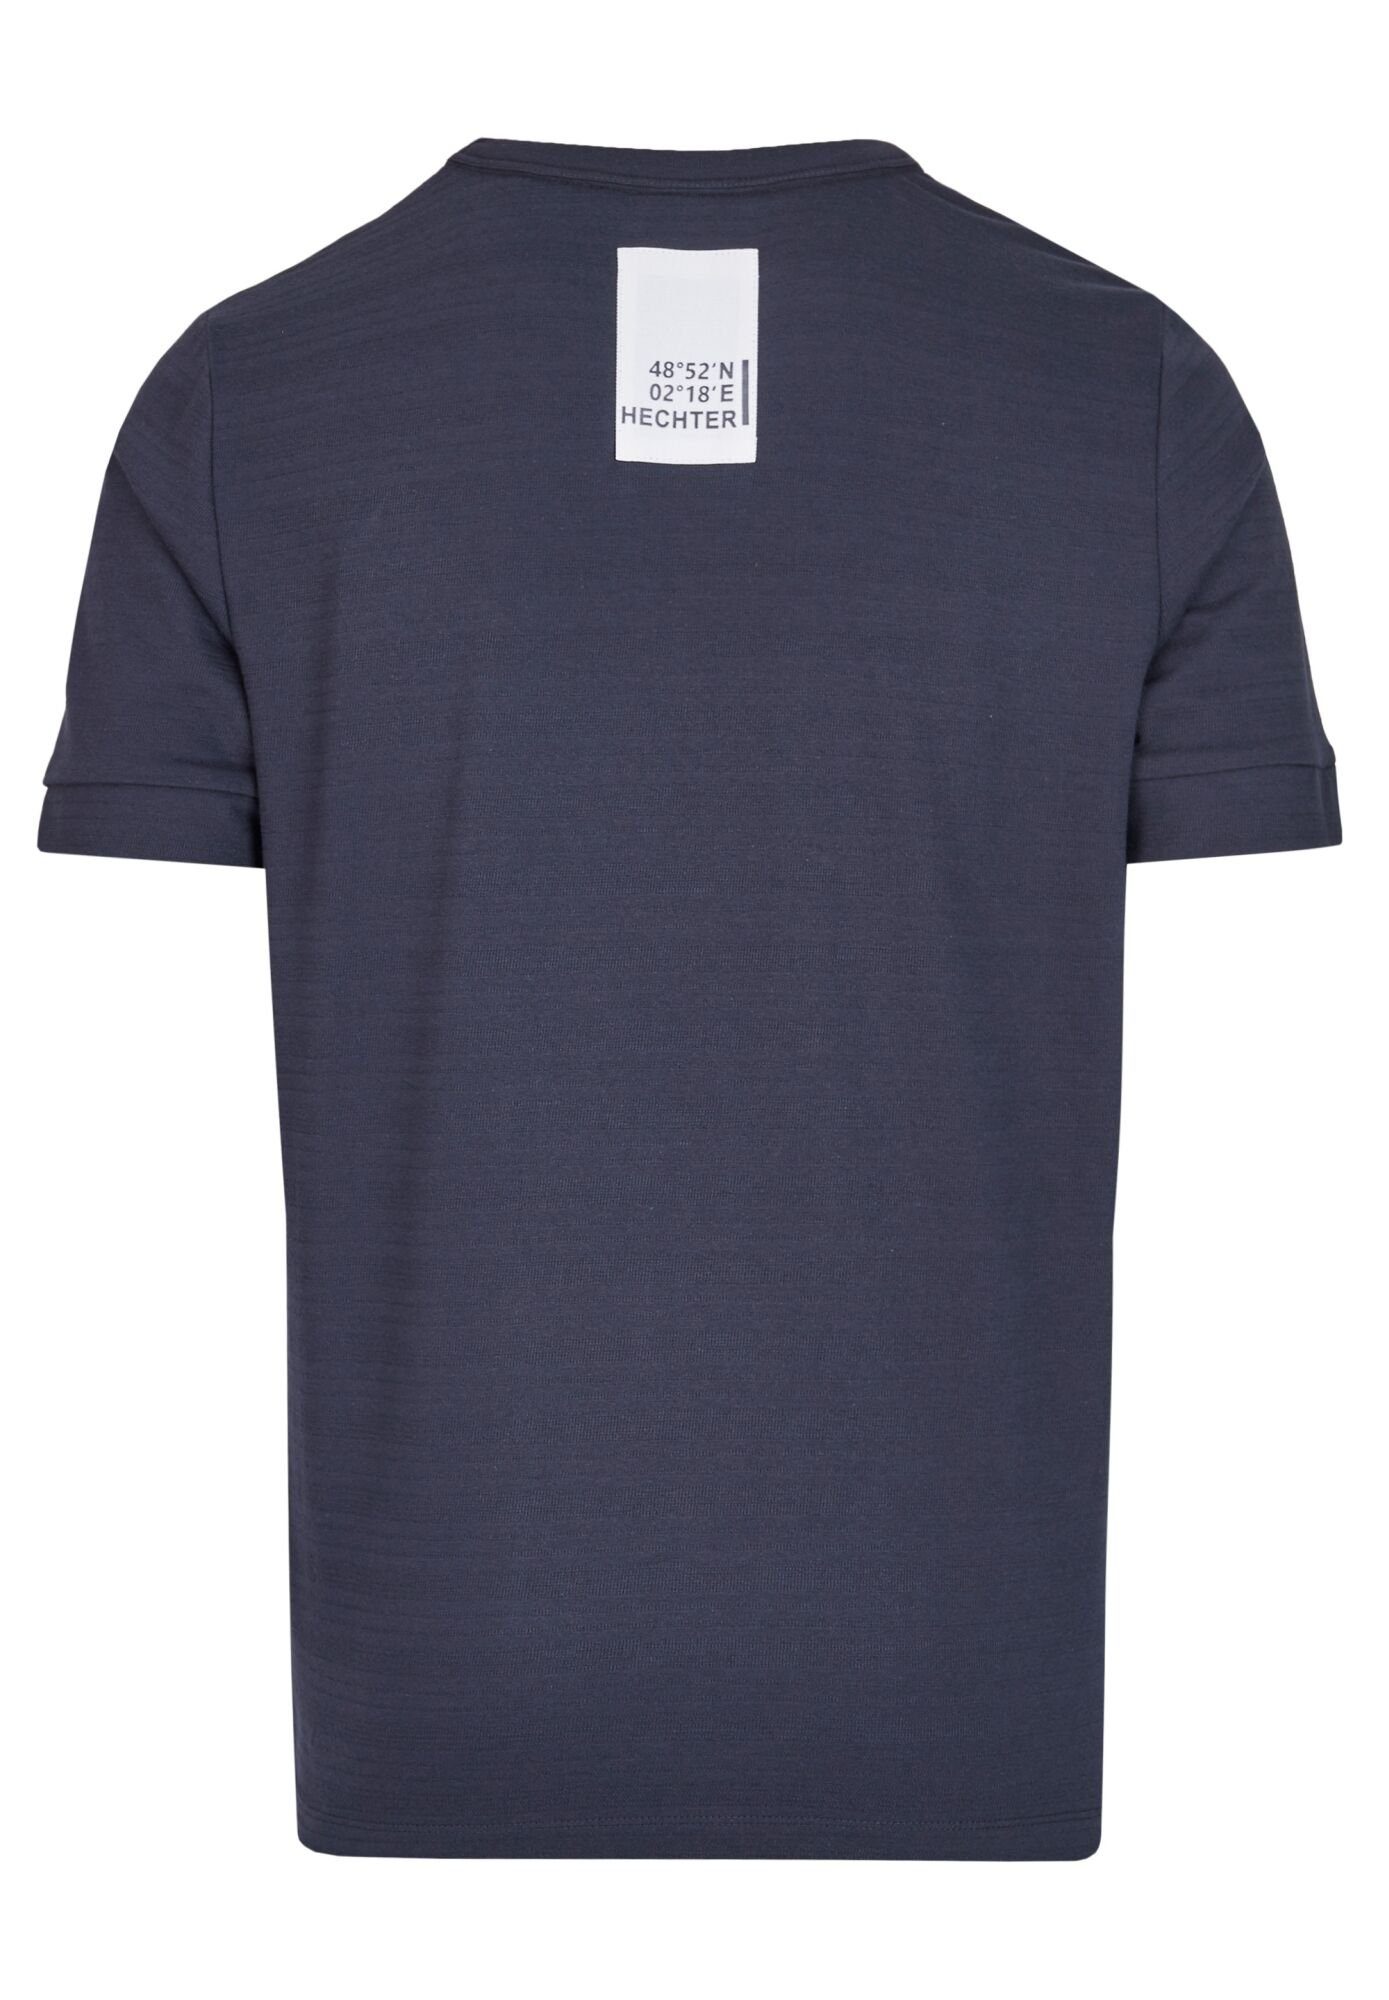 HECHTER Marken-Applikation Nacken PARIS Print-Shirt im blue midnight